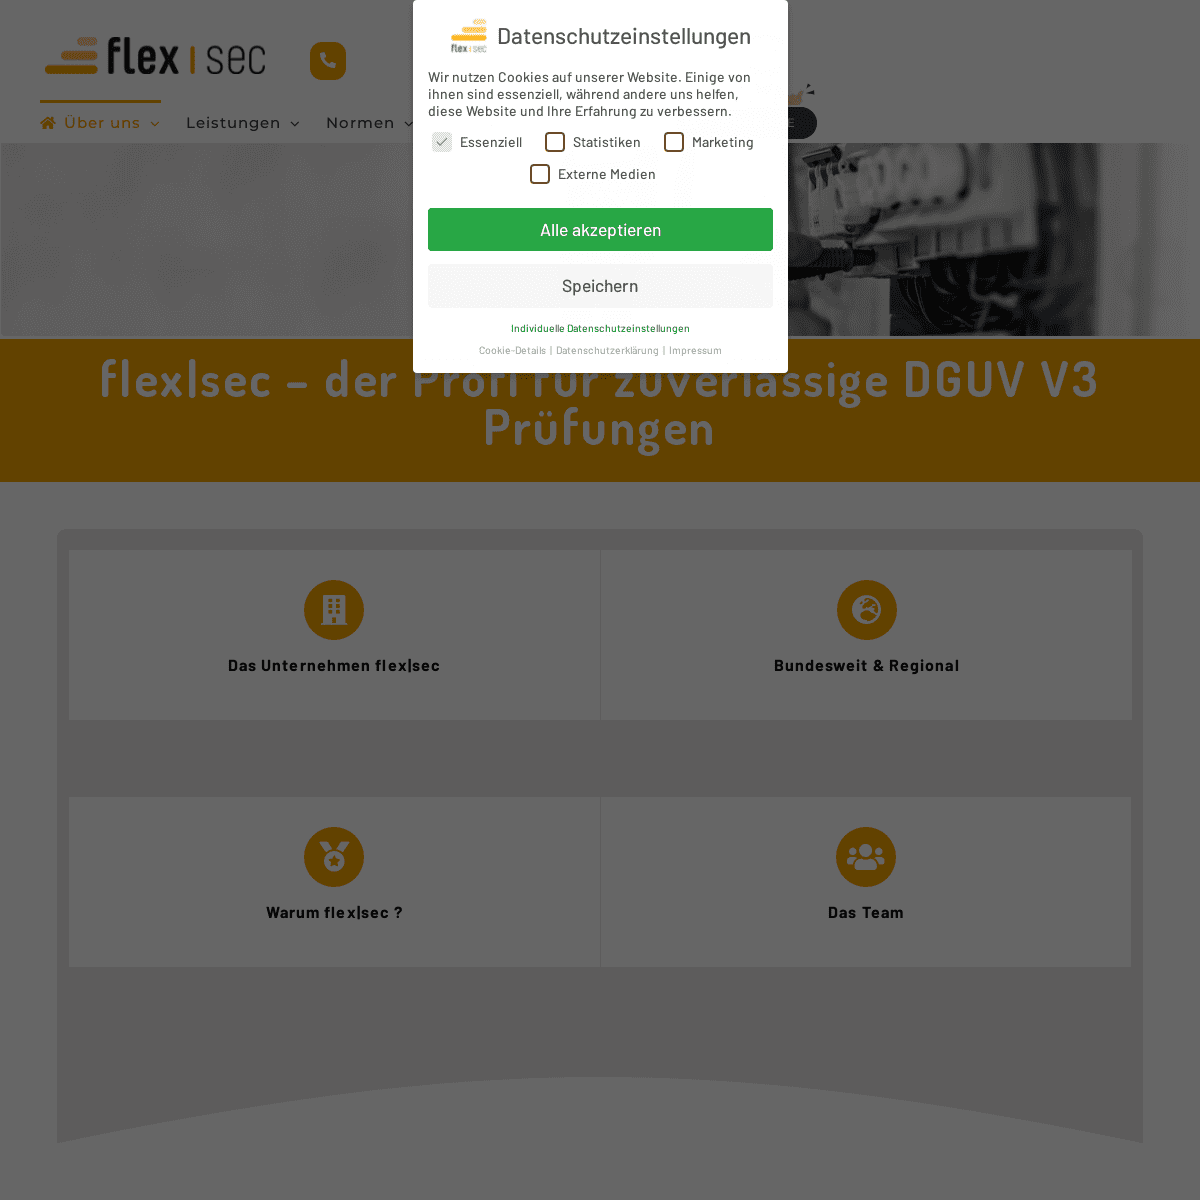 A complete backup of https://flex-sec.de